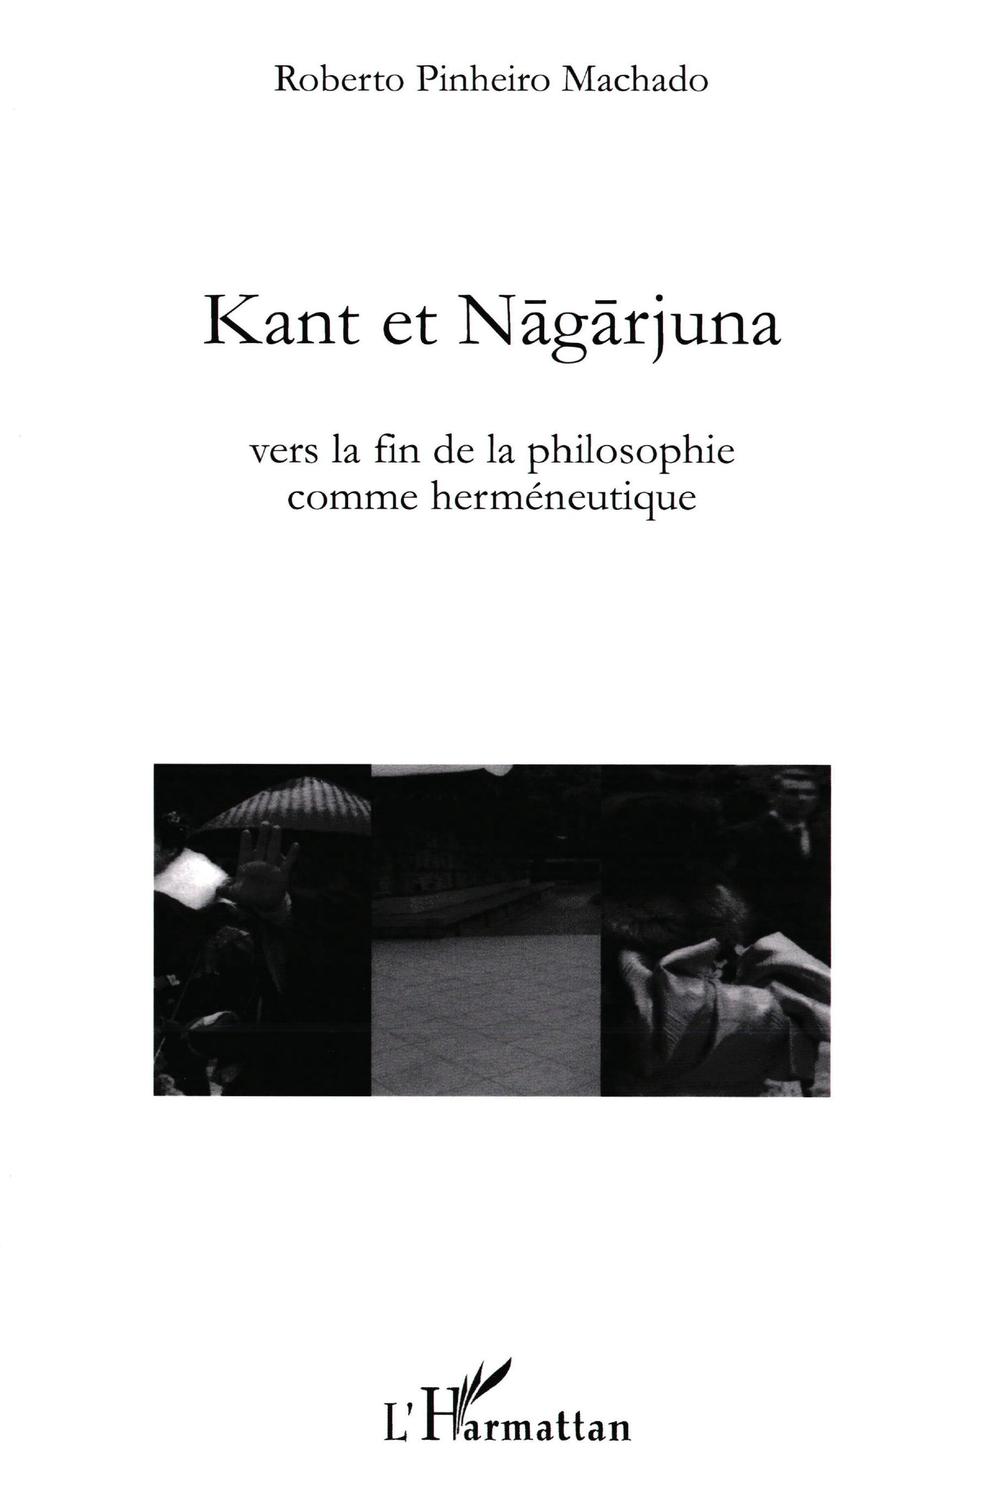 Kant et Nagarjuna - Roberto Pinheiro Machado